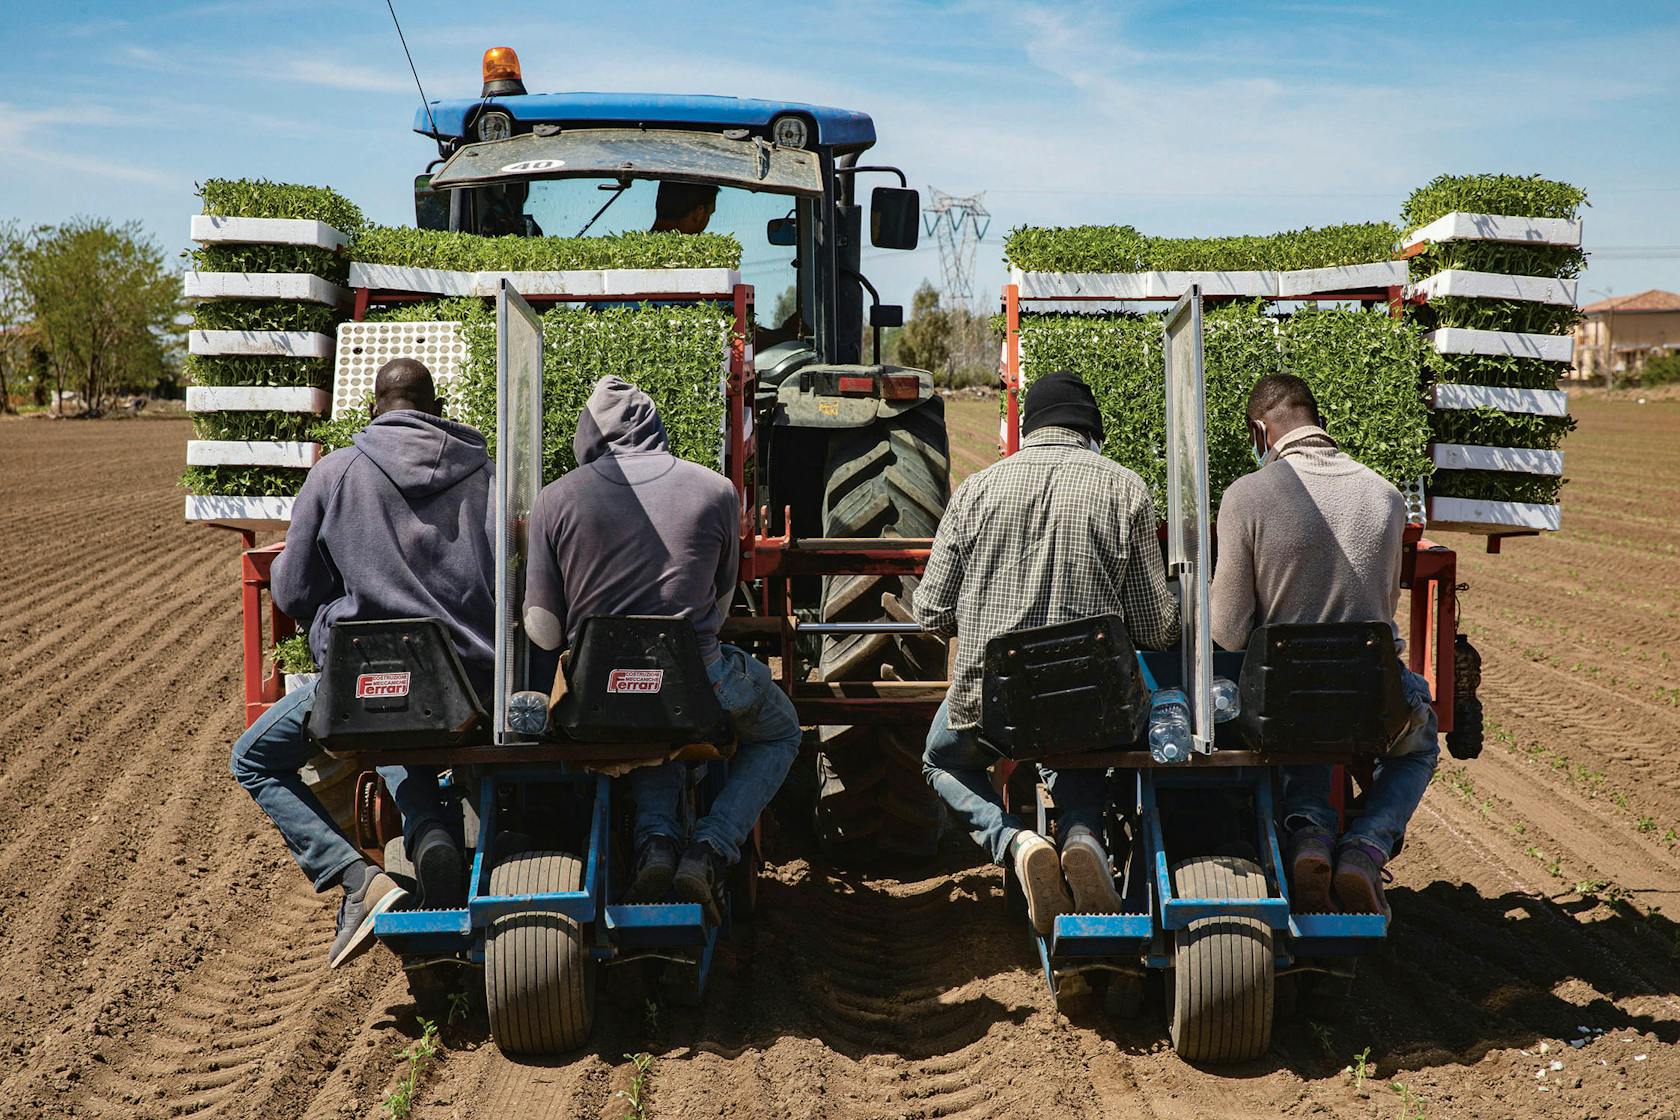 Seizoensarbeiders op een tractor. Tussen hen in een paneel tegen de verspreiding van het virus.